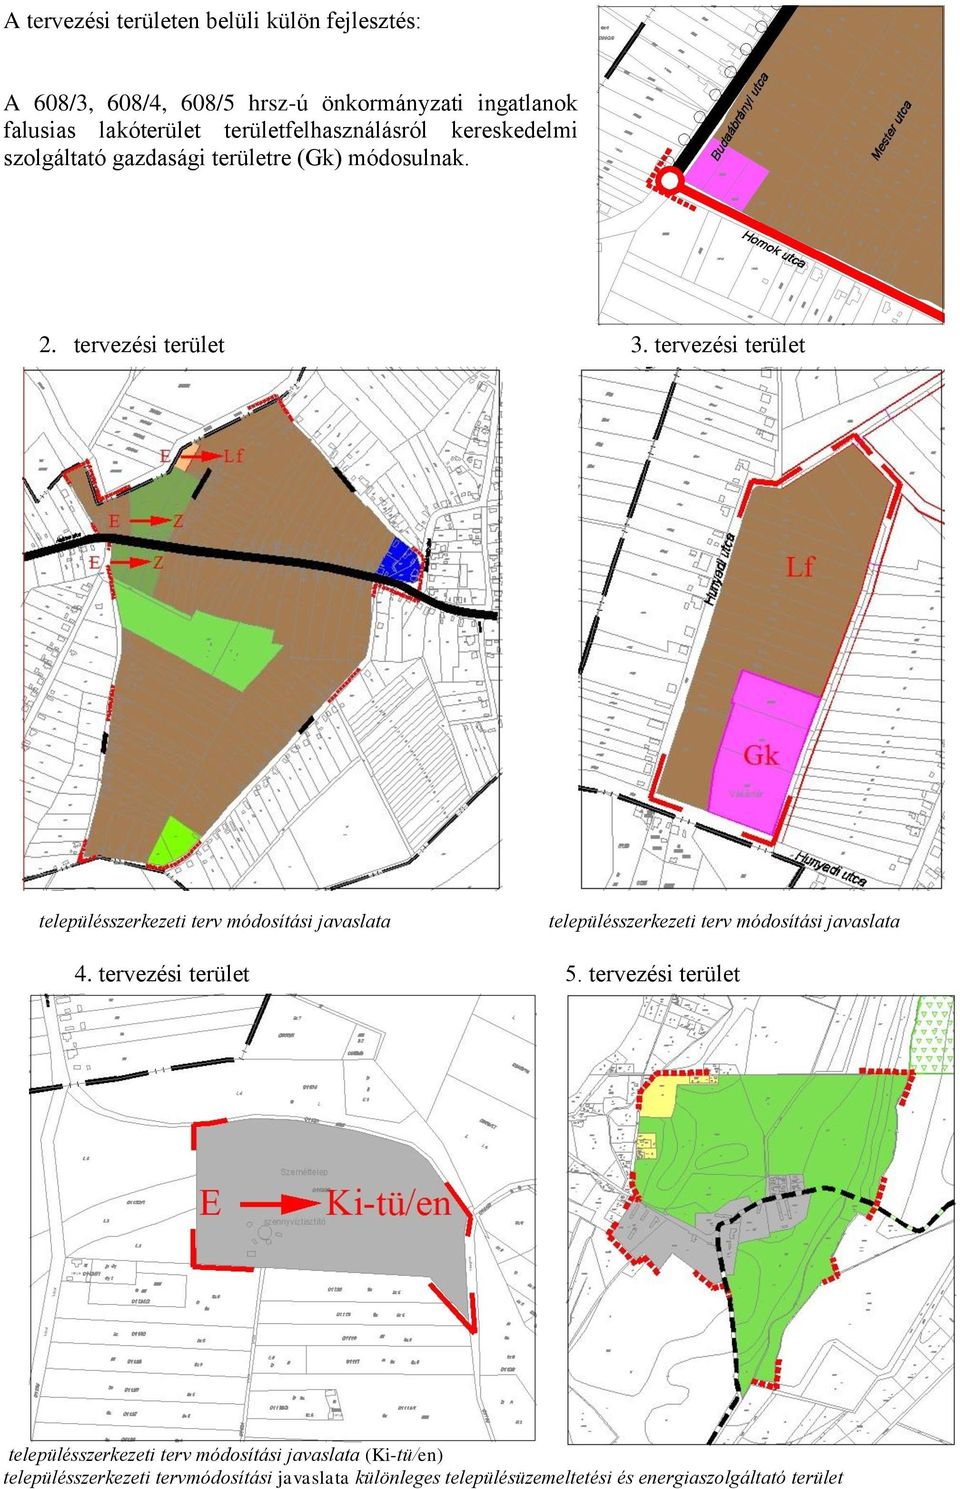 településszerkezeti terv módosítási javaslata településszerkezeti terv módosítási javaslata 4 tervezési terület 5 tervezési terület